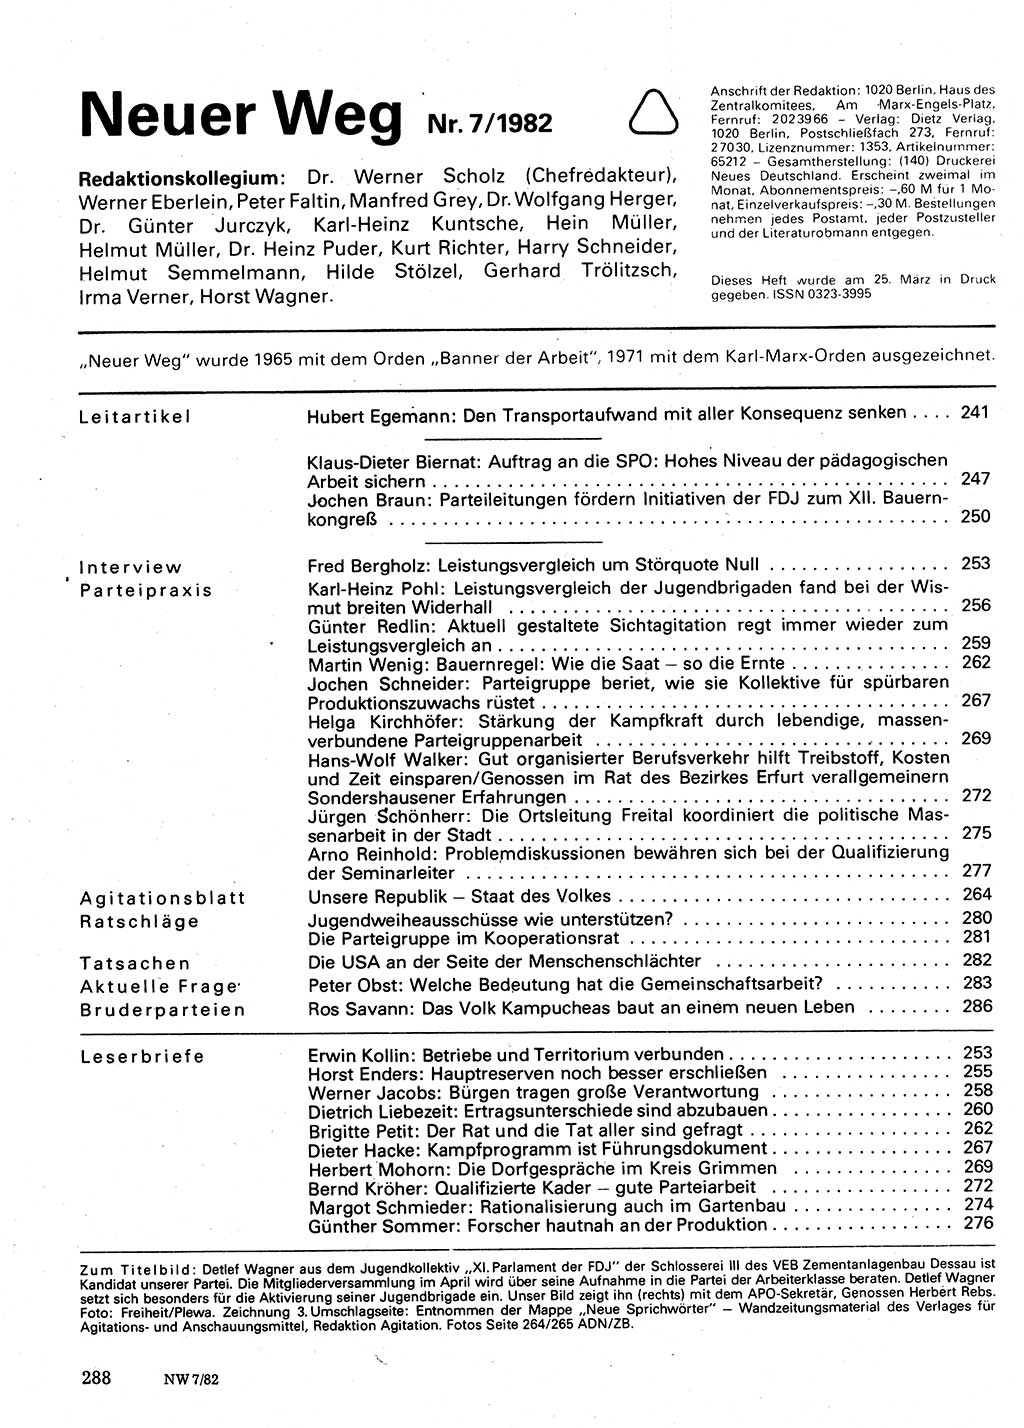 Neuer Weg (NW), Organ des Zentralkomitees (ZK) der SED (Sozialistische Einheitspartei Deutschlands) für Fragen des Parteilebens, 37. Jahrgang [Deutsche Demokratische Republik (DDR)] 1982, Seite 288 (NW ZK SED DDR 1982, S. 288)